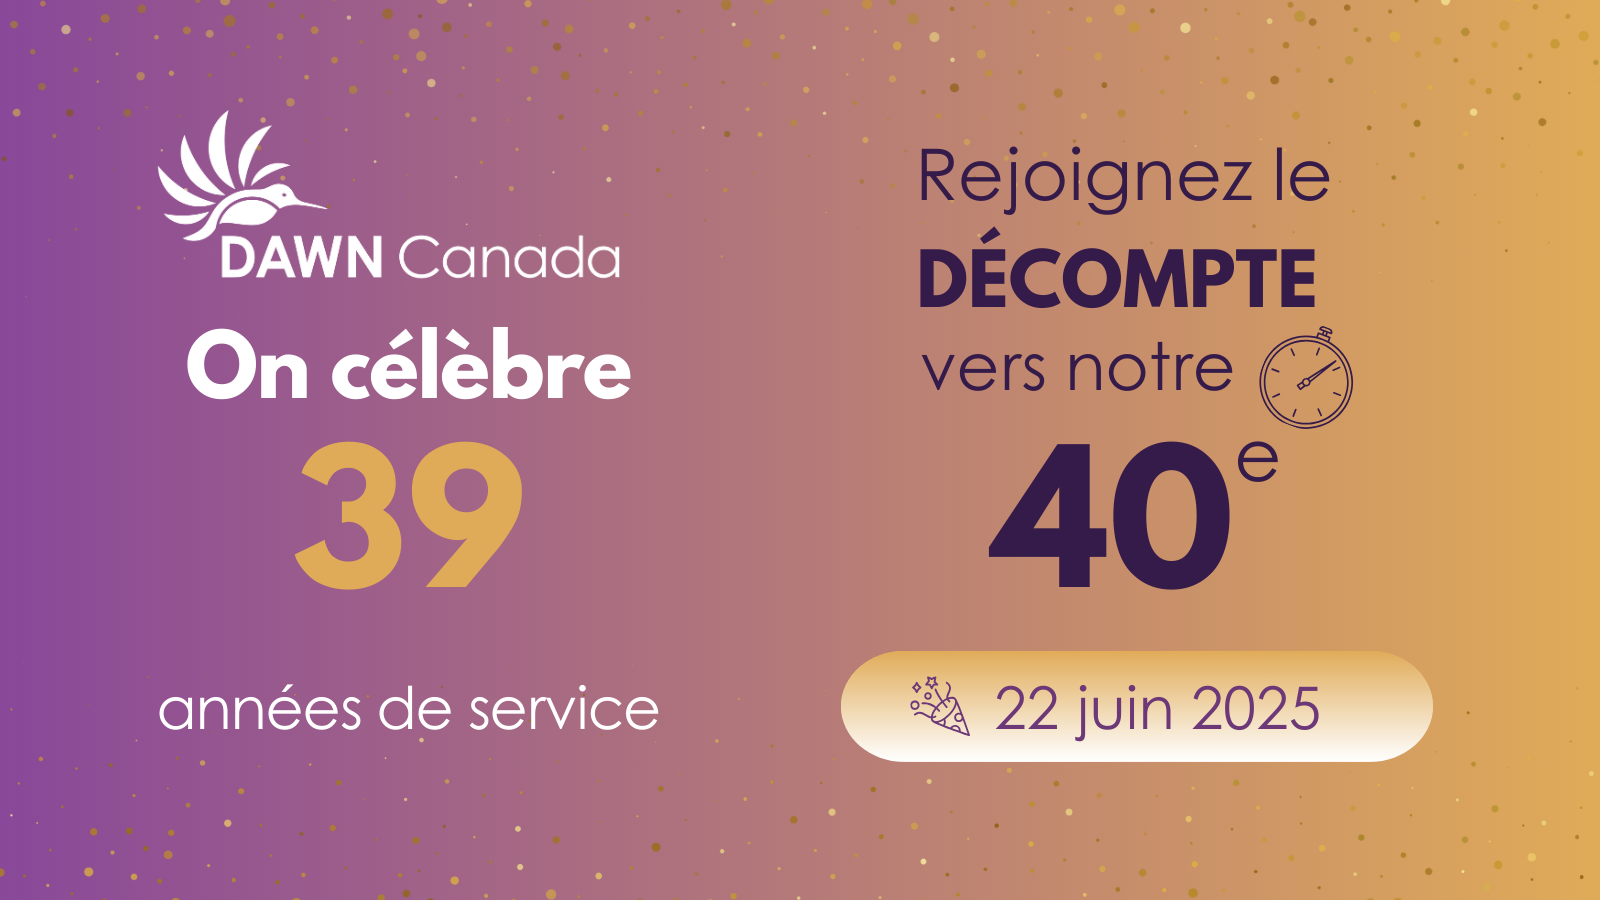 Image promotionnelle pour DAWN Canada qui célèbre ses 39 ans de service avec un compte à rebours jusqu'à son 40e anniversaire le 22 juin 2025. L'image comporte des graphiques de célébration, un fond dégradé violet et orange, et un texte soulignant les détails de l'événement.